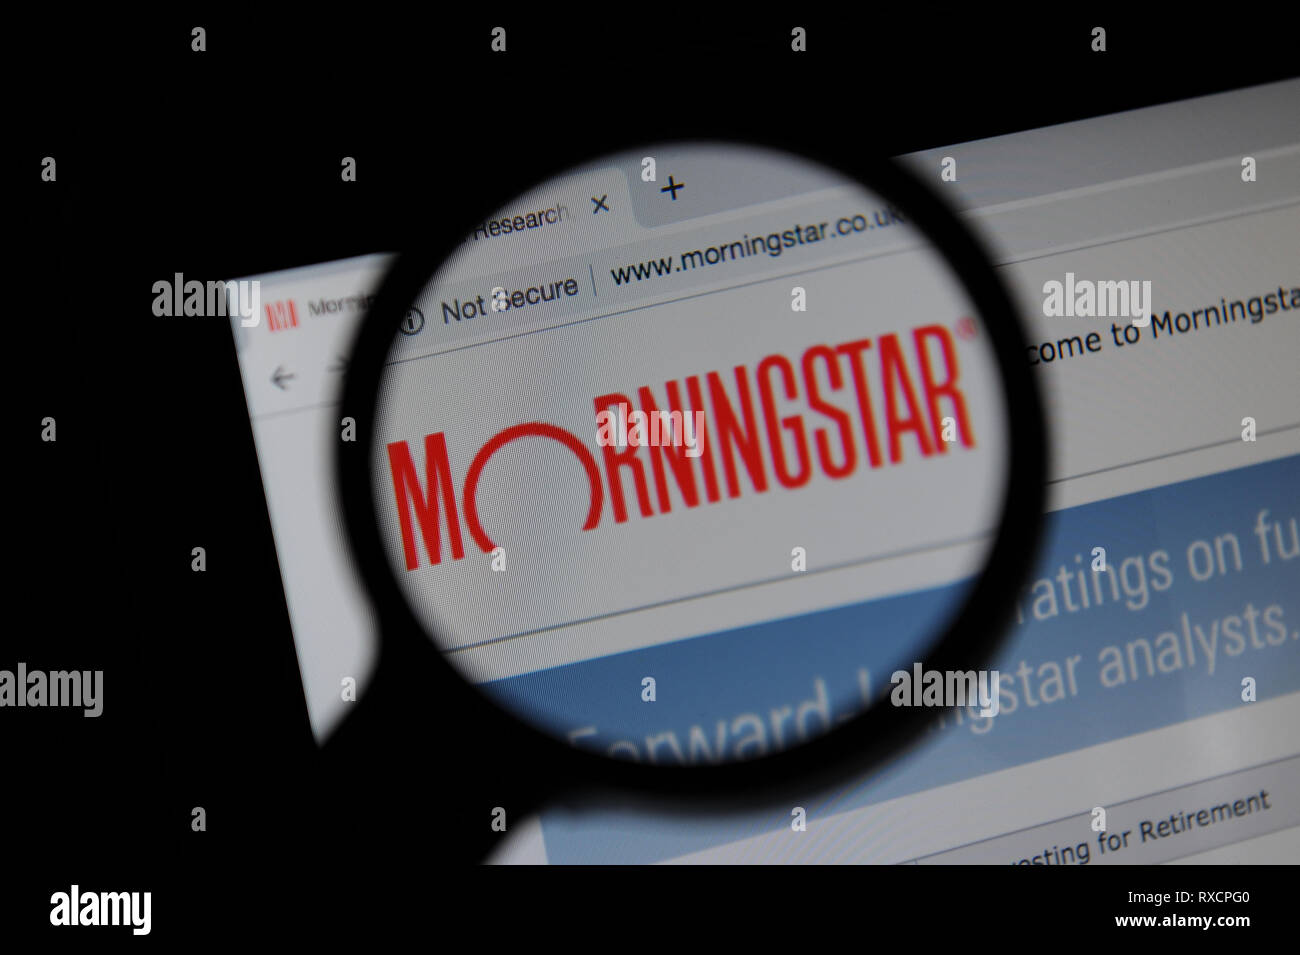 Morningstar website seen through a magnifyinh glass Stock Photo